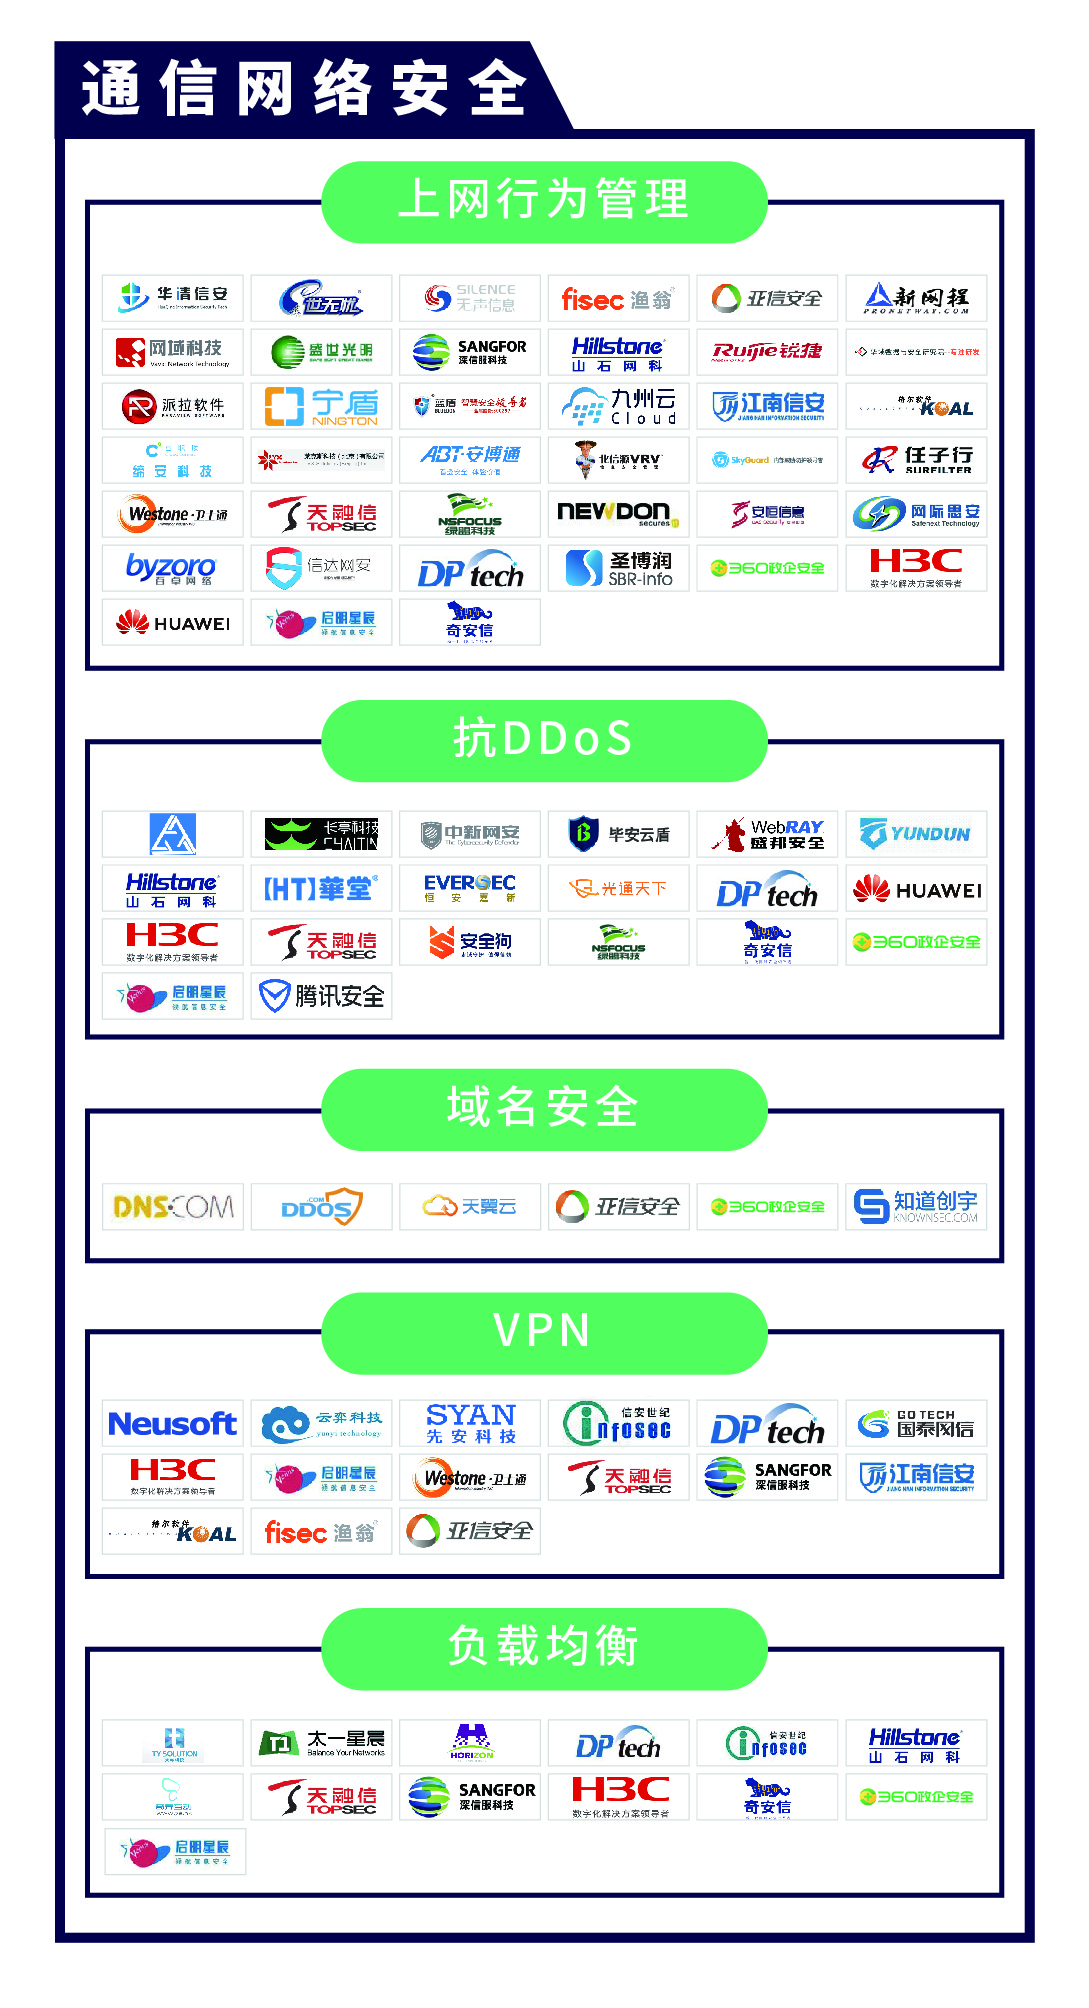 《CCSIP 2020中国网络安全产业全景图》正式发布 | FreeBuf咨询-第3张图片-网盾网络安全培训